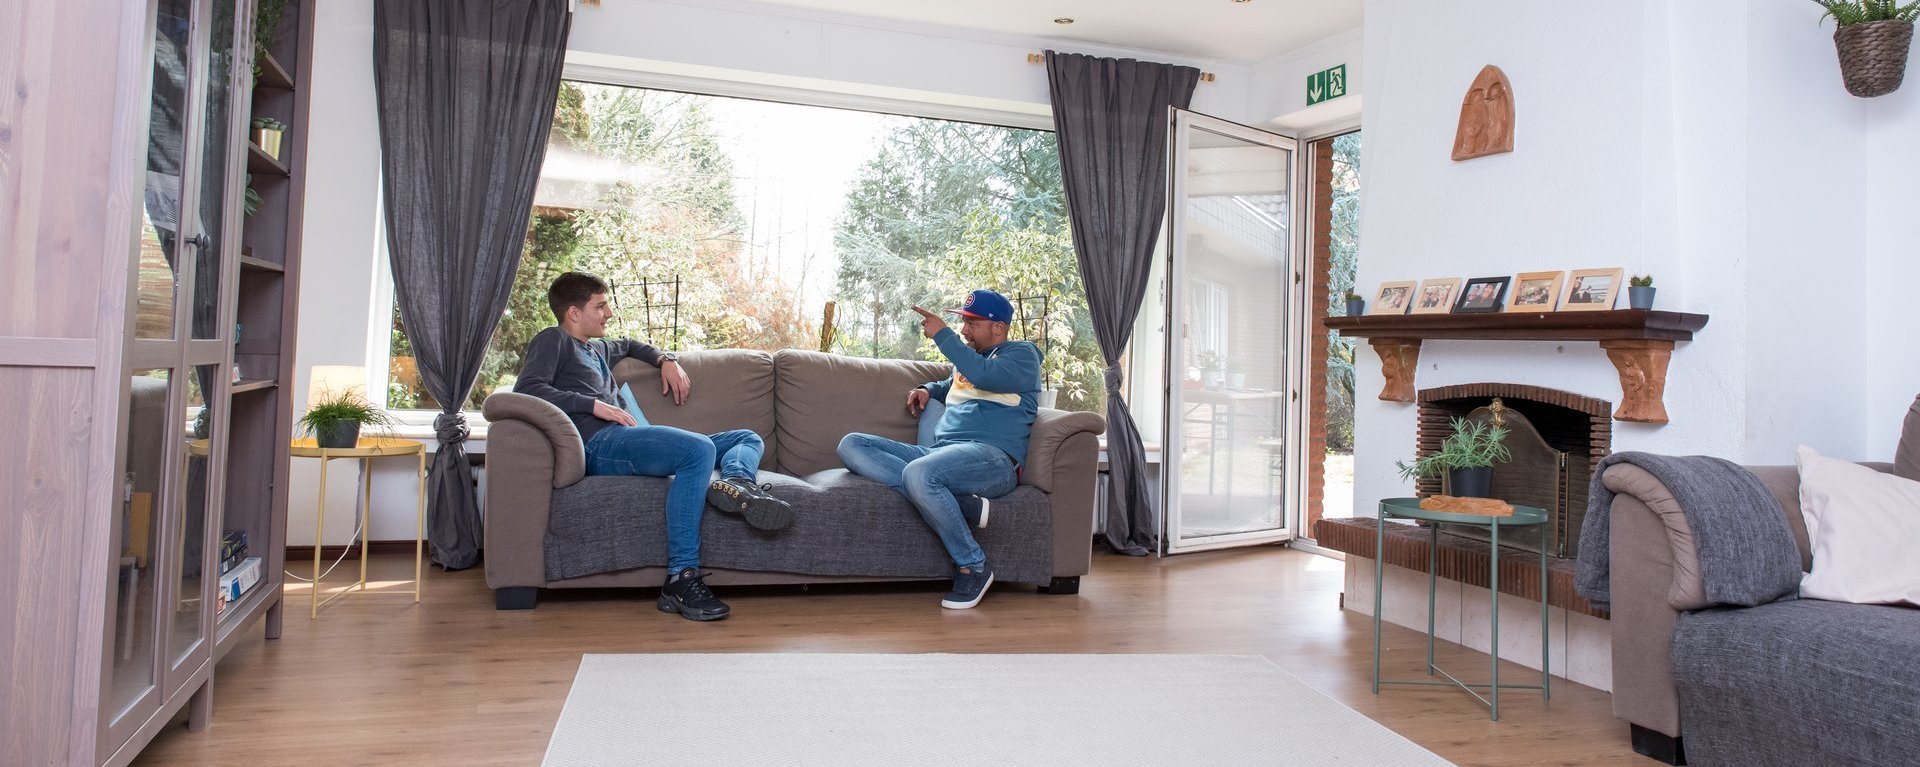 gemütliches abhängen zweier Jugendlicher im Wohnraum auf dem Sofa